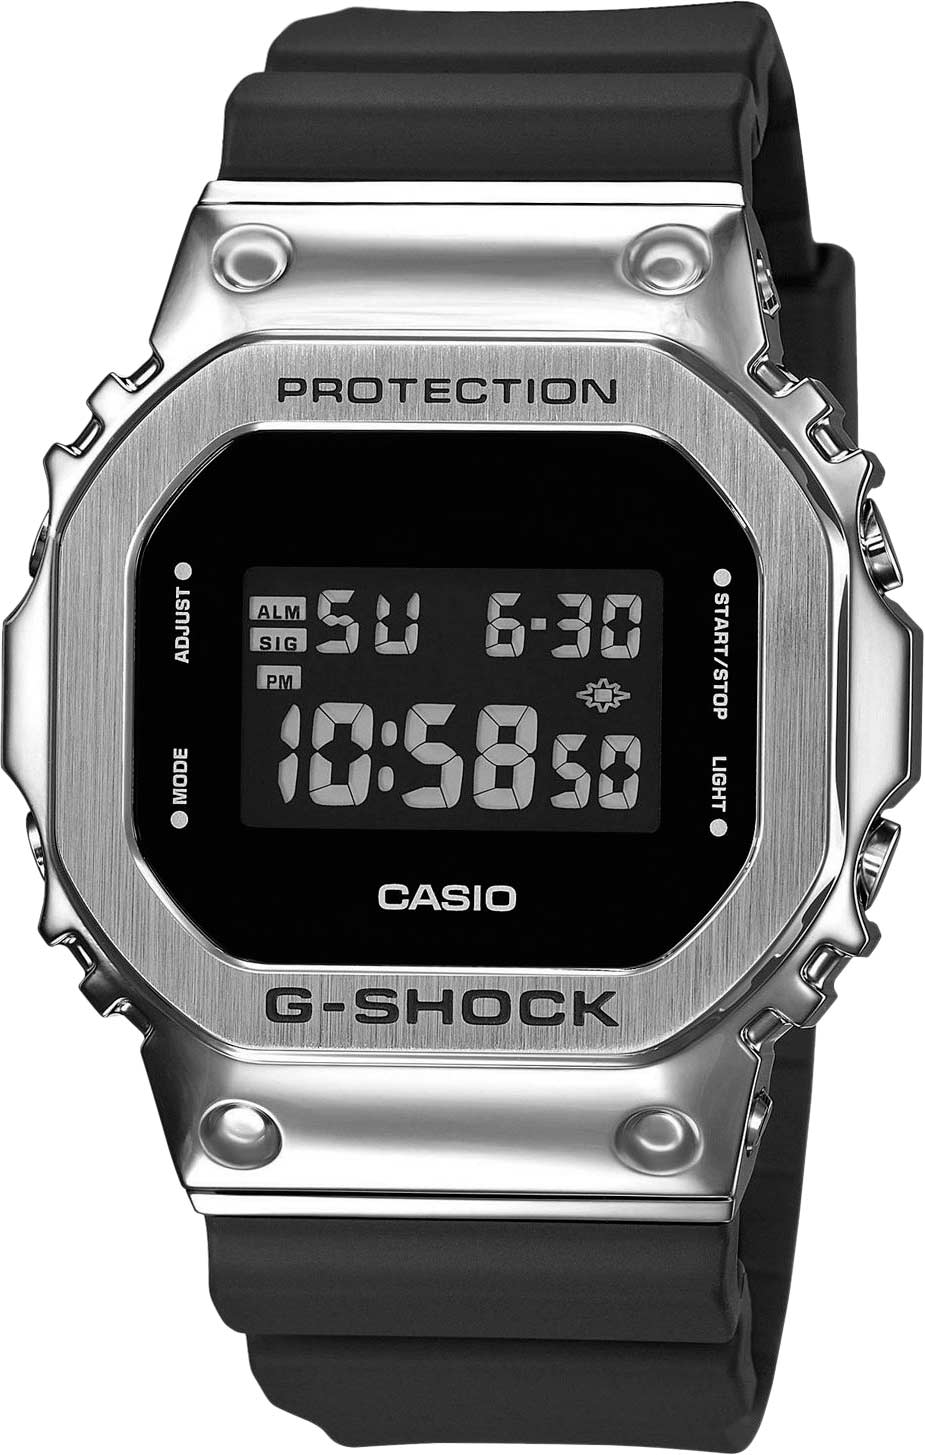 Японские наручные часы Casio G-SHOCK GM-5600-1ER с хронографом